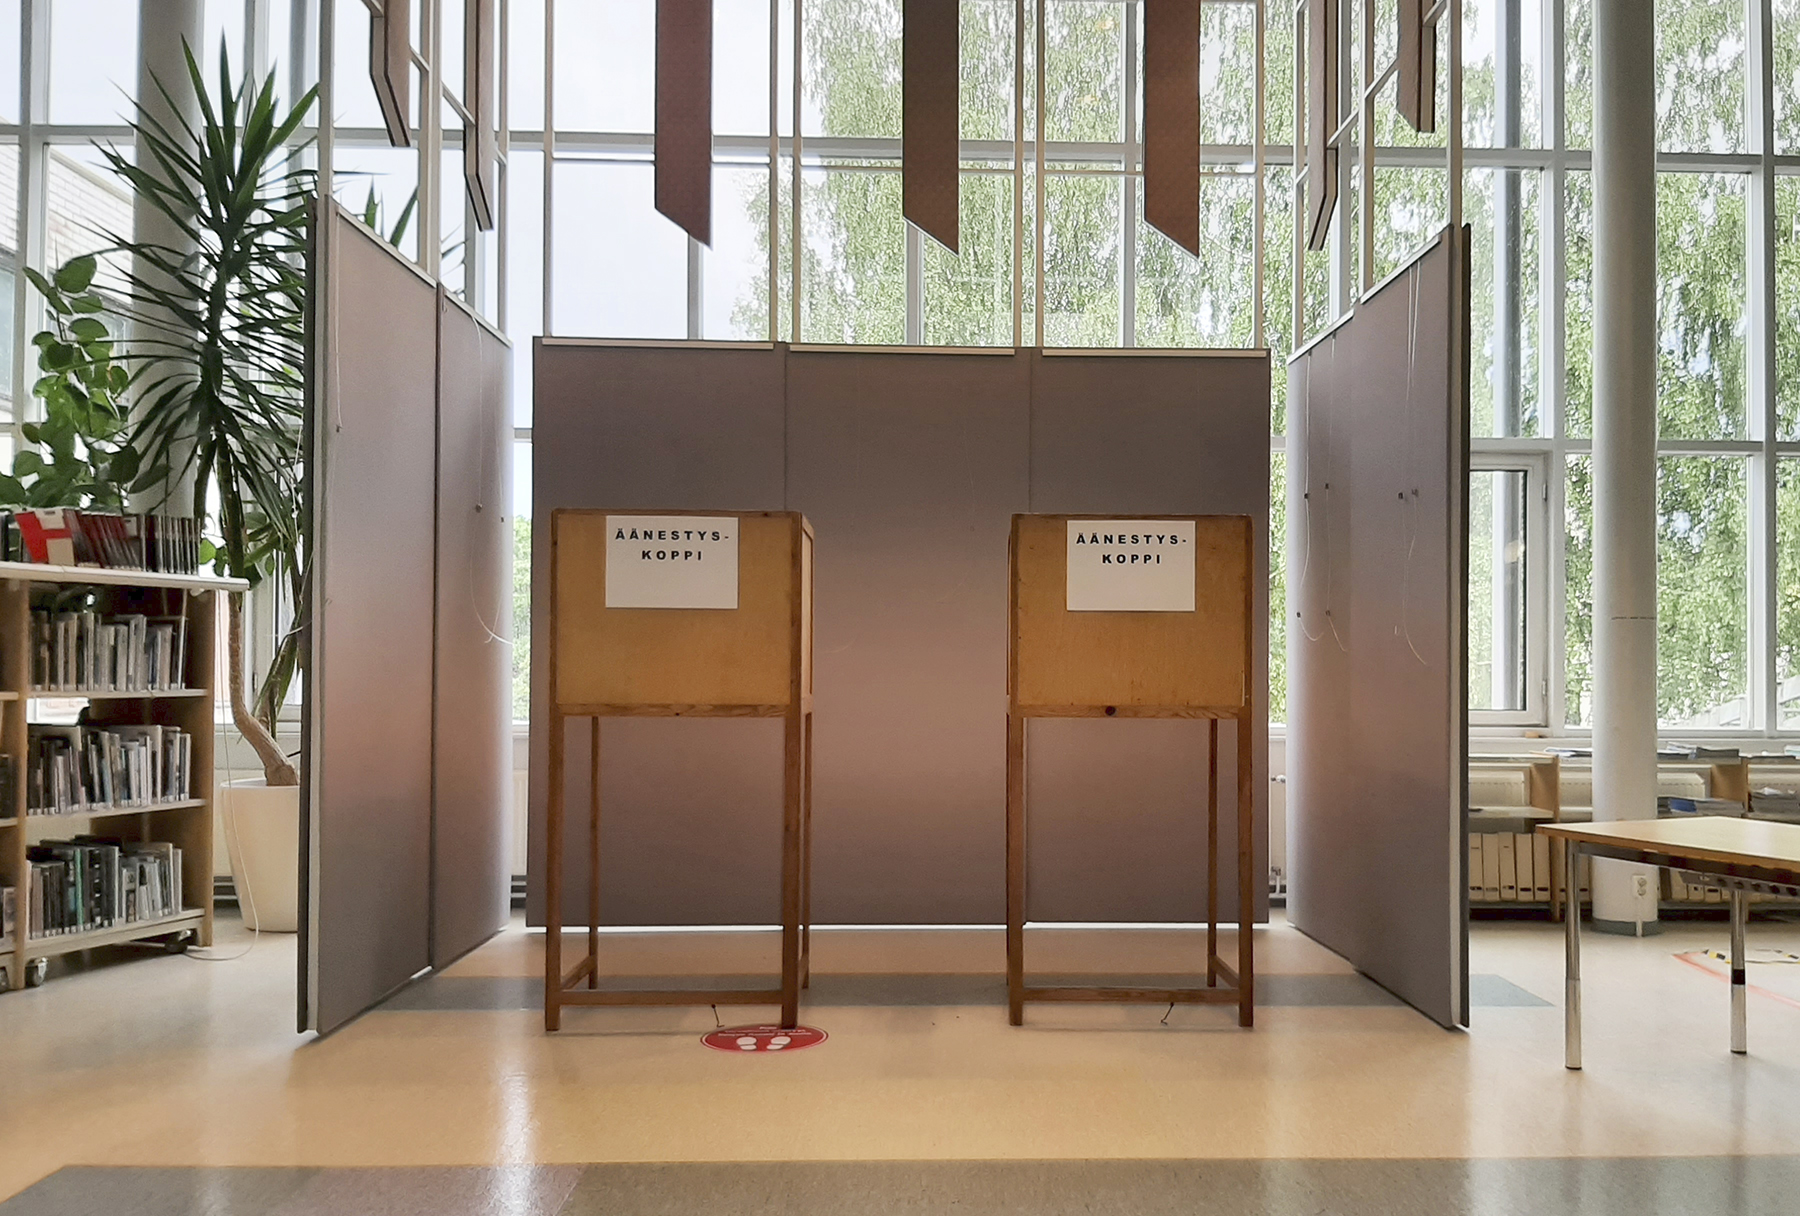 Äänestyspaikka, Orivesi